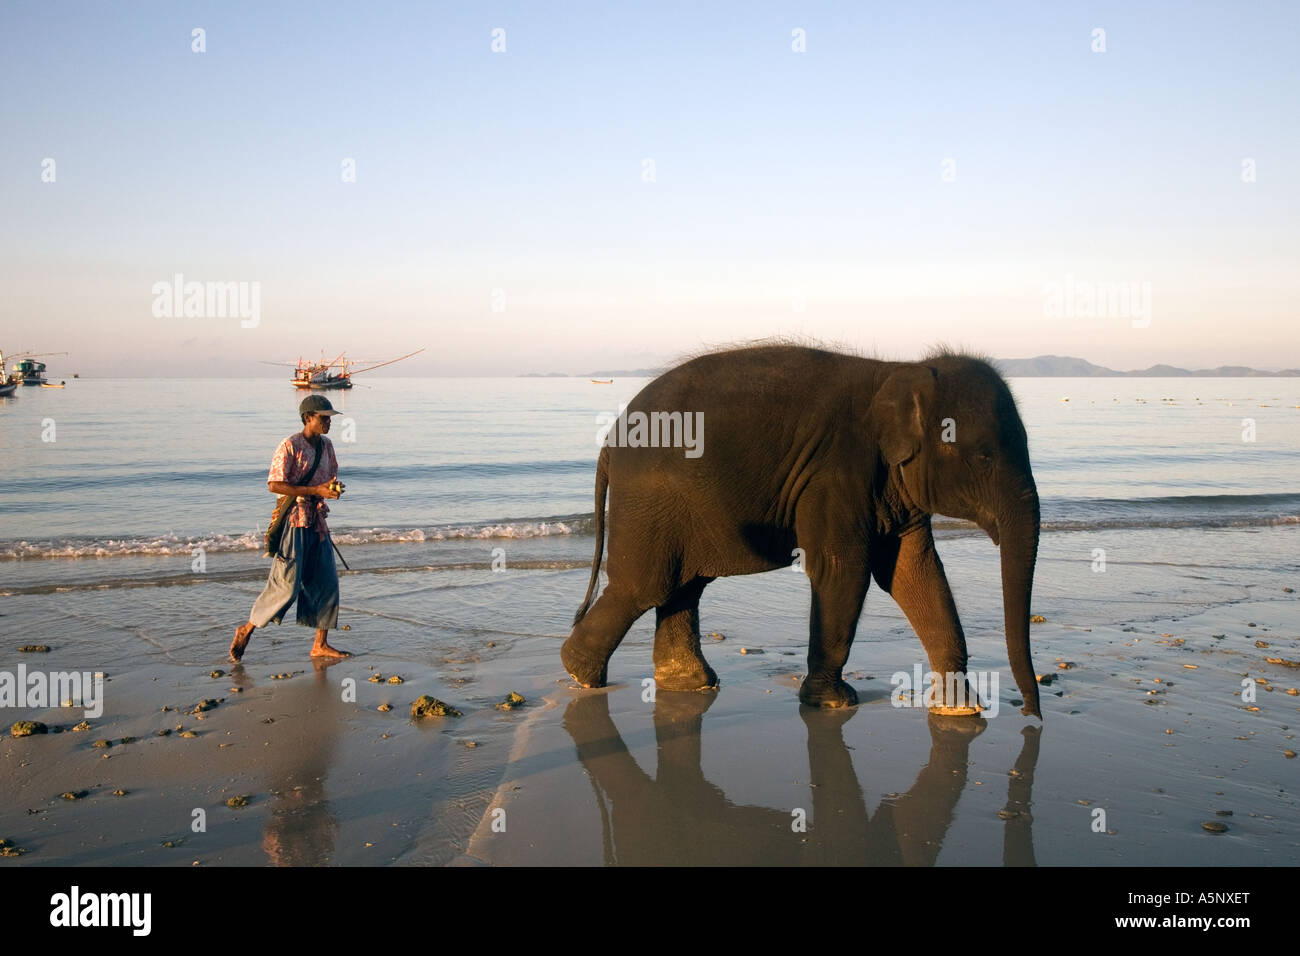 Jeune éléphant asiatique de 4 ans 'Rara' se baignant dans la mer avec mahoot, cavalier, gardien ou entraîneur sur la plage touristique de Krabi en Thaïlande. Banque D'Images